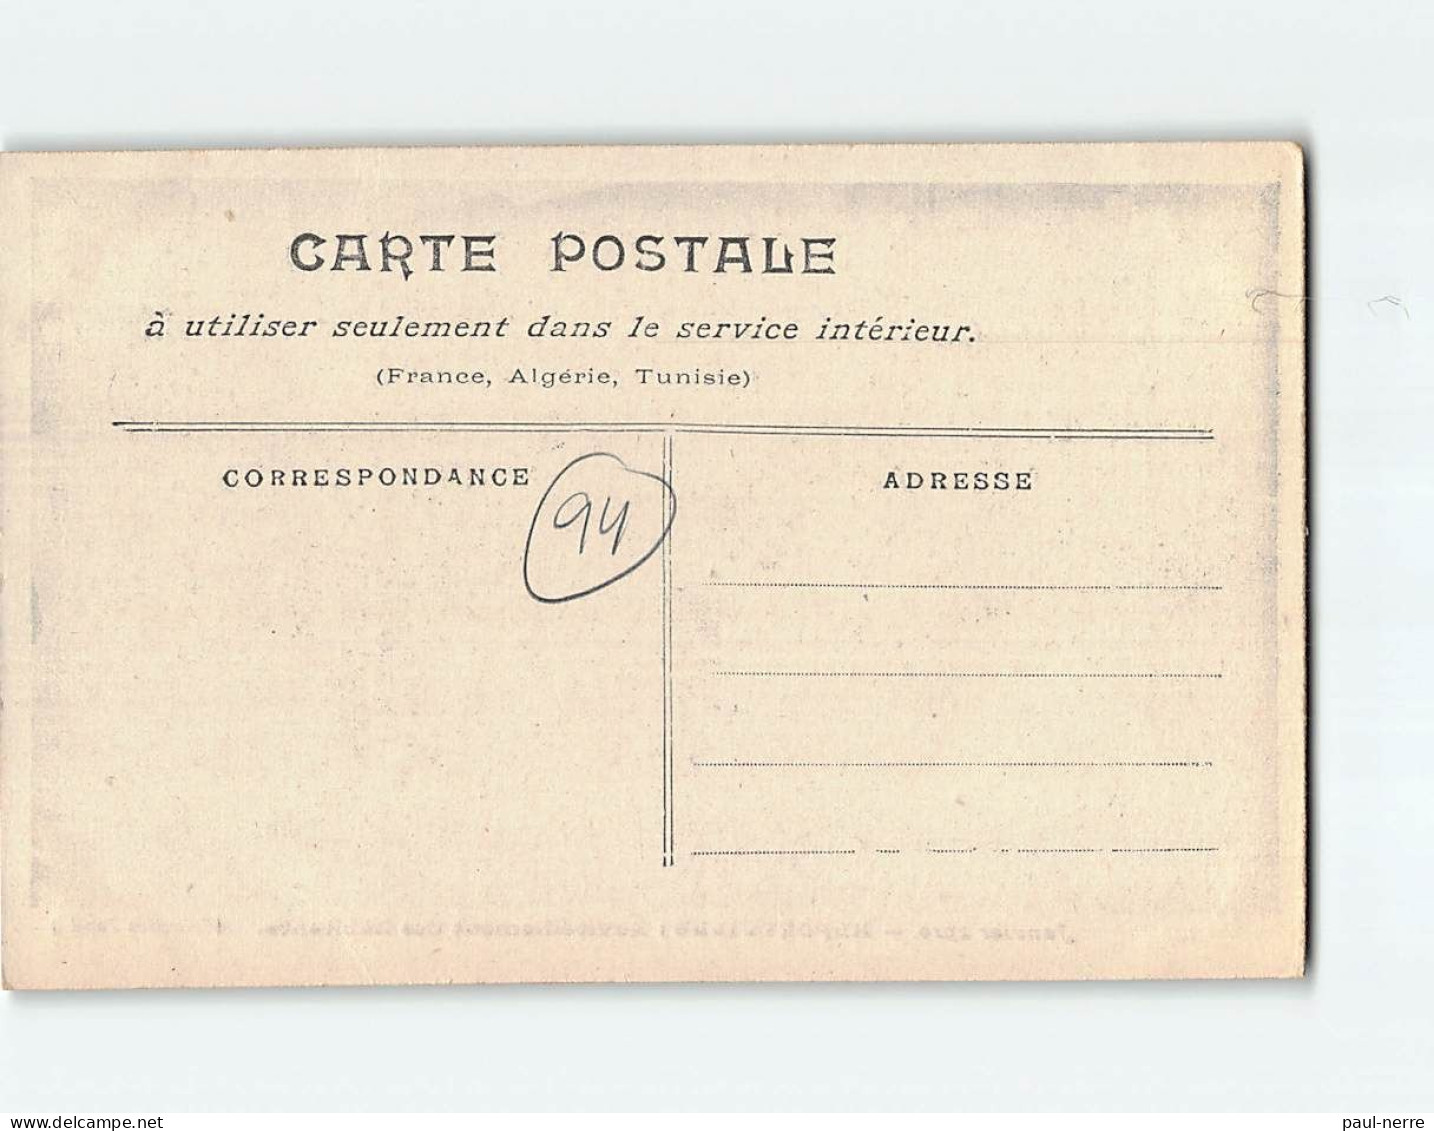 ALFORTVILLE : Inondations 1910, Ravitaillement Des Habitants - état - Alfortville